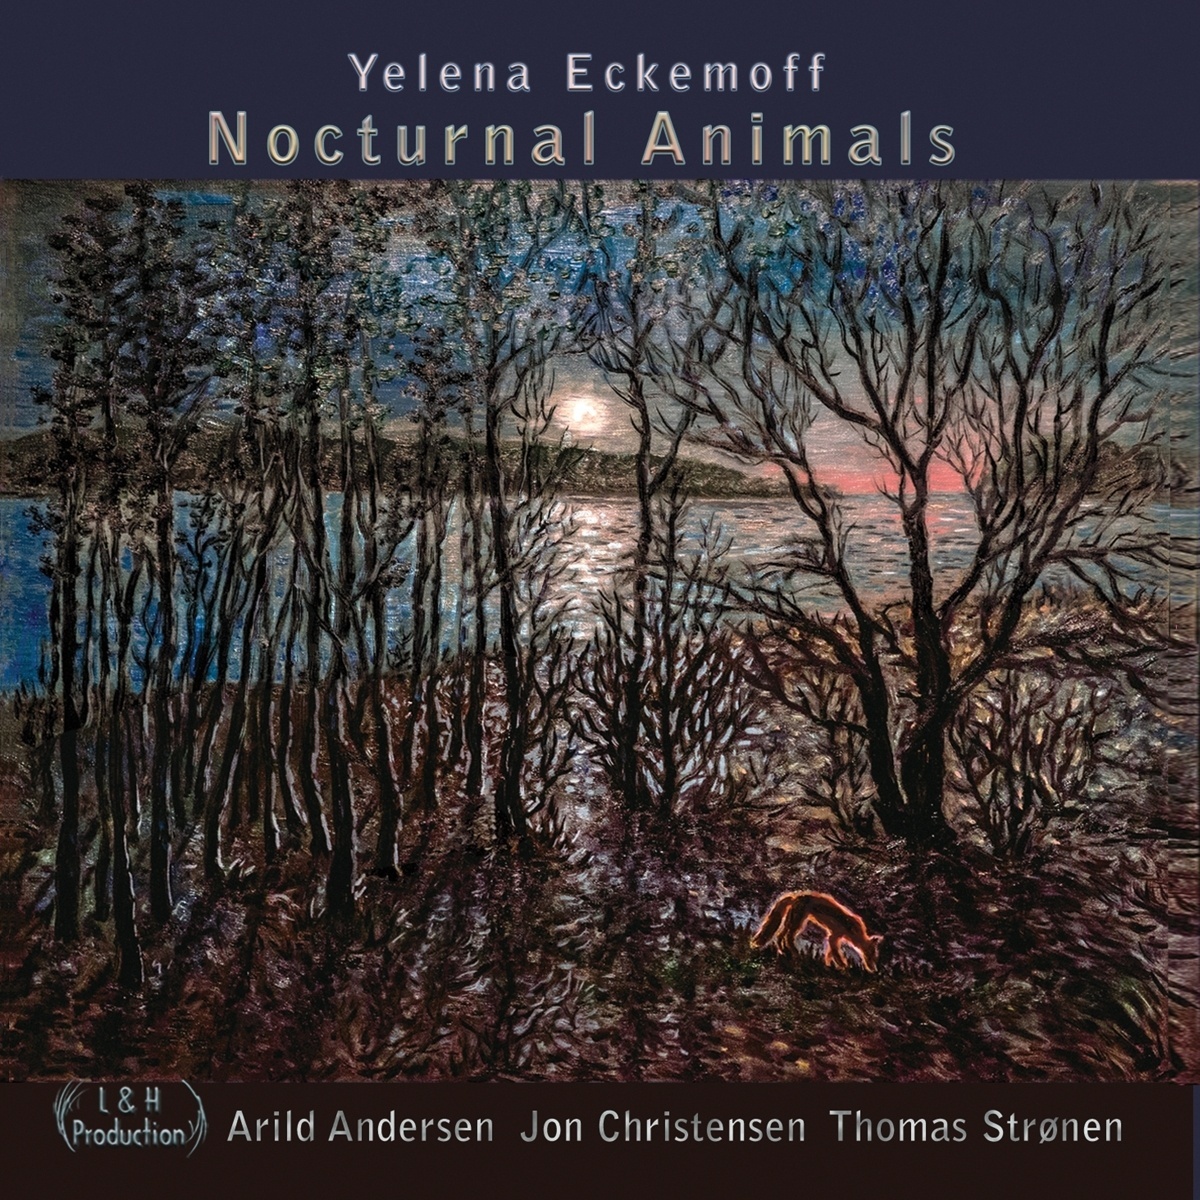 Nocturnal Animals - Yelena Eckemoff. (CD)